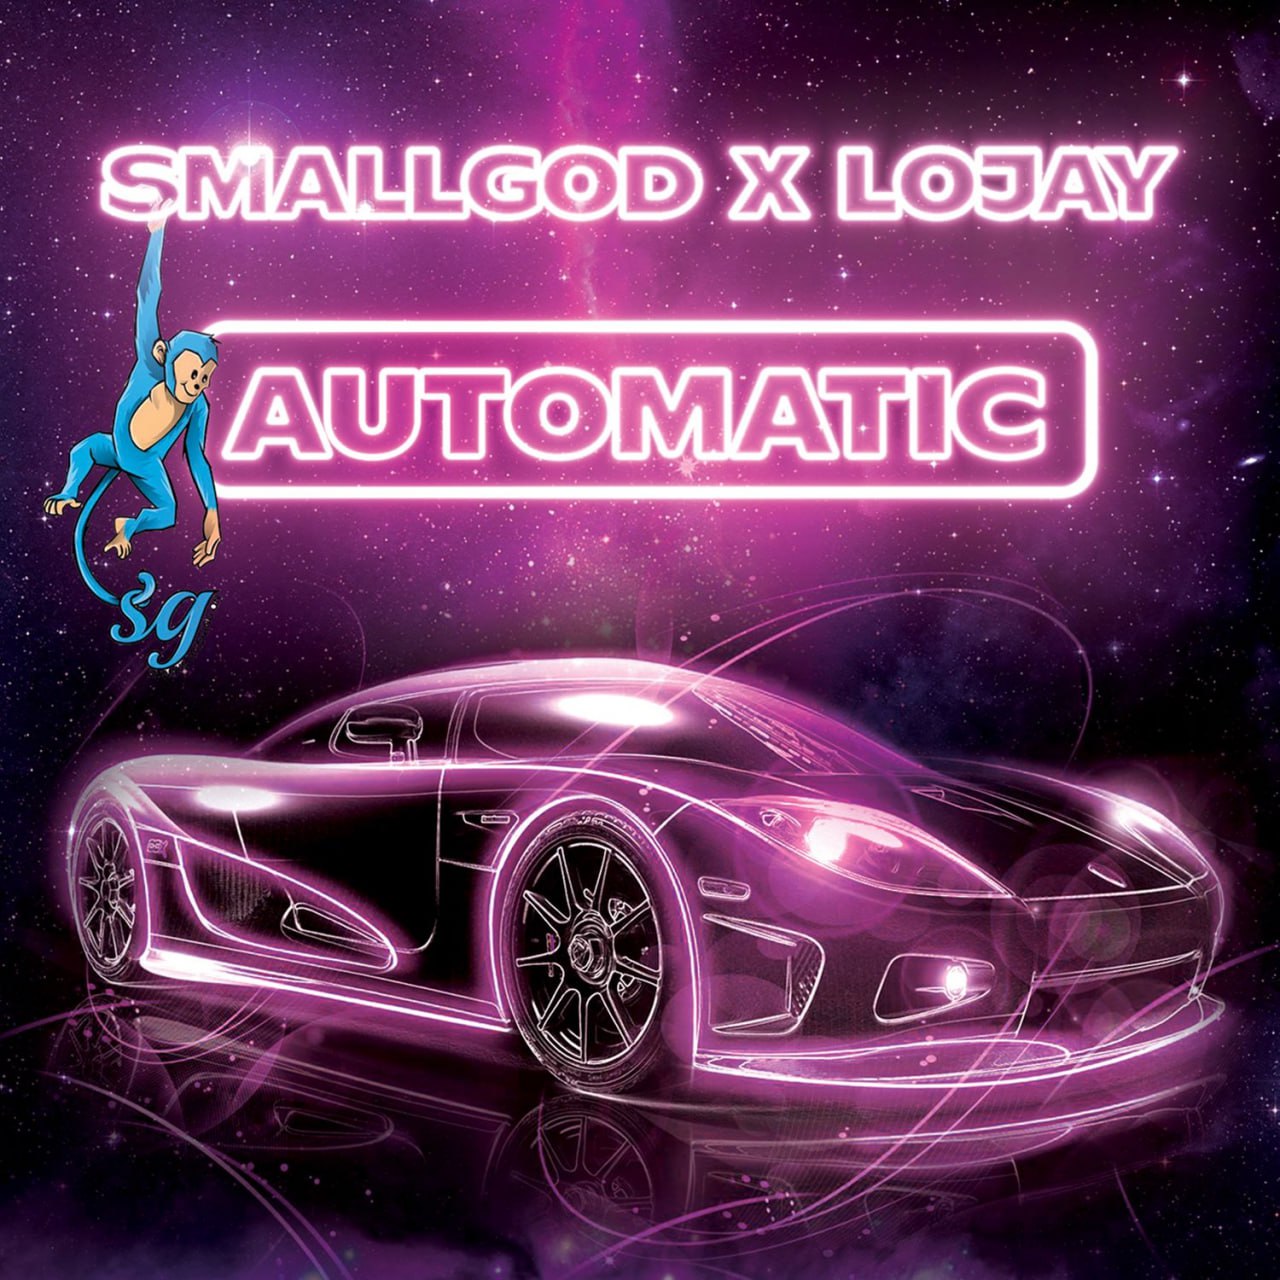 Automatic - Smallgod & Lojay